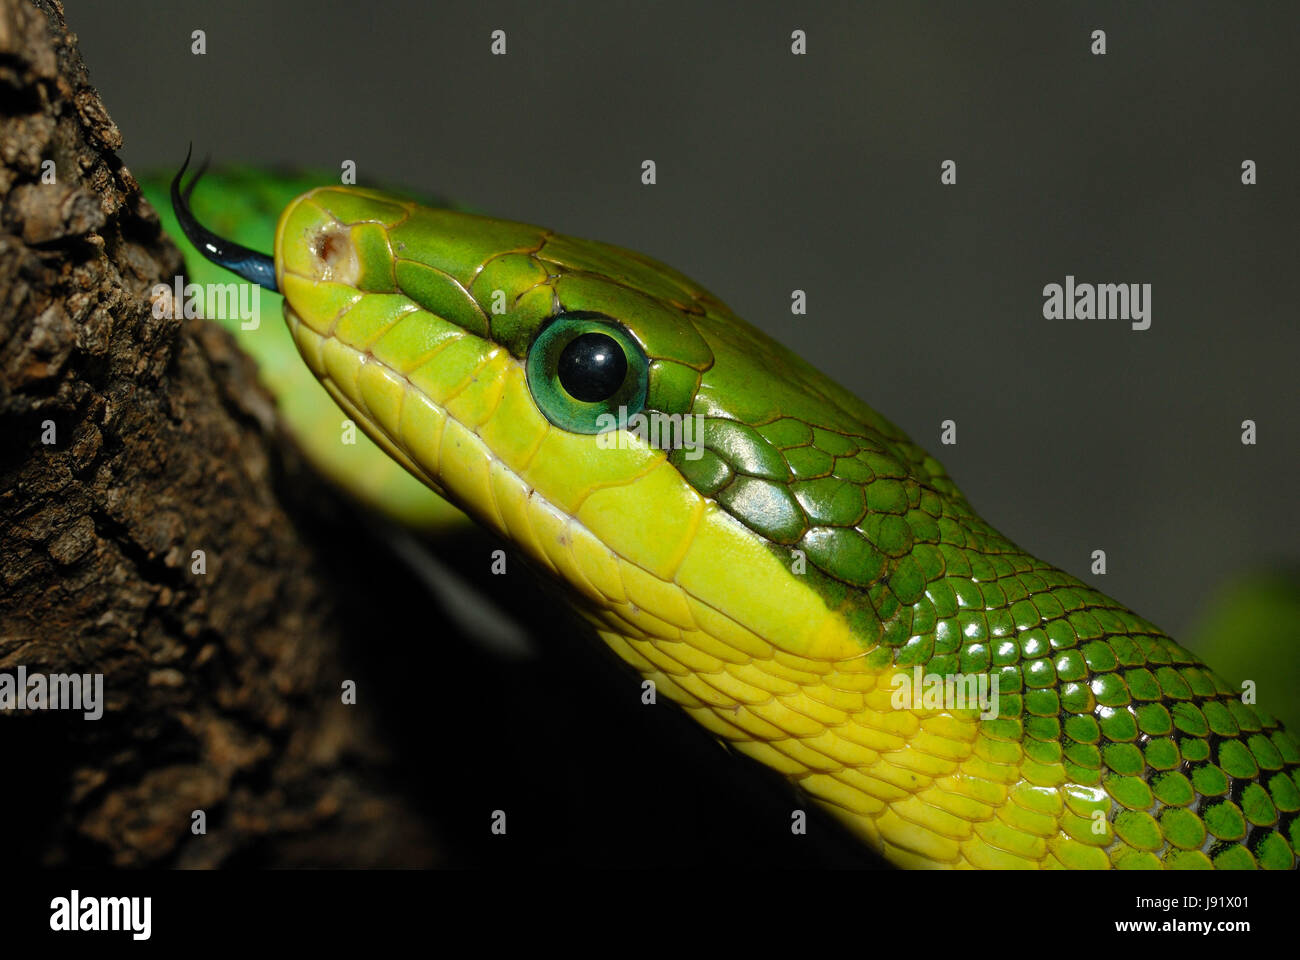 Reptil, grün, Zunge, Schlange, gelb, Kopf, Reptil, grün, Zunge, Auge  Stockfotografie - Alamy